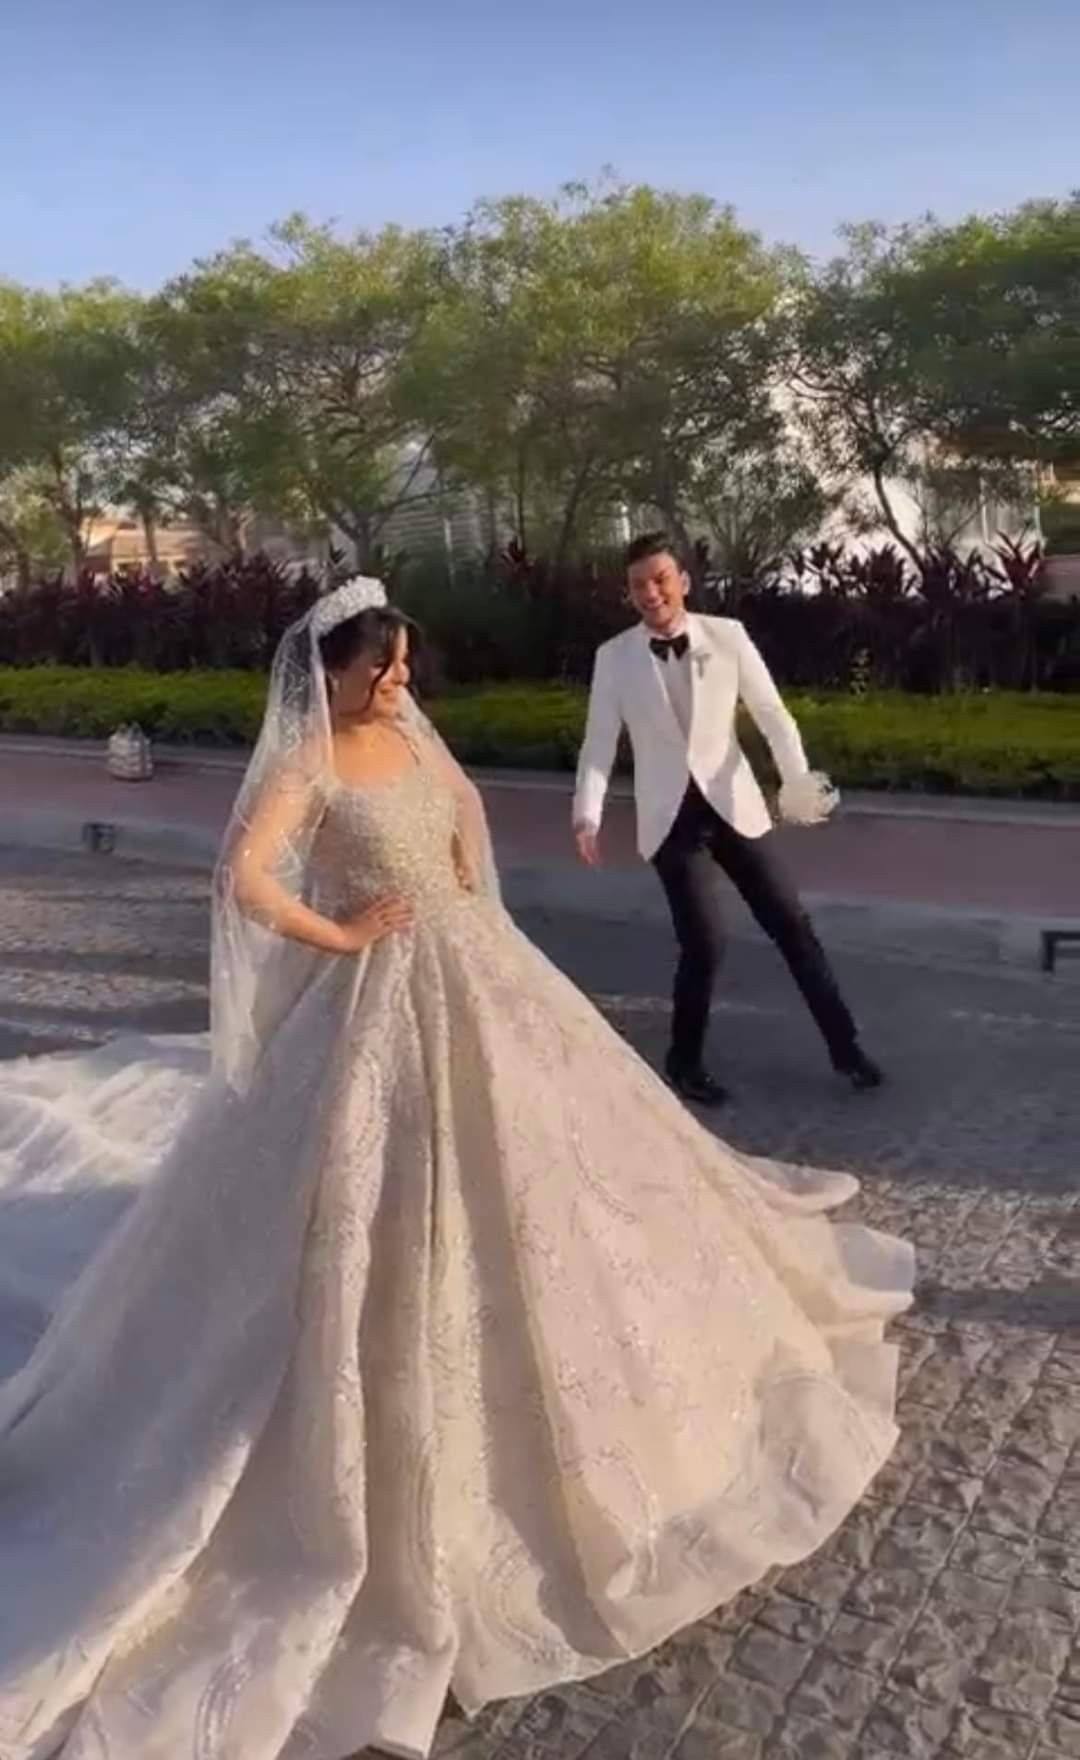 شاهد: حفل زفاف حودة بندق وشقيقة المغني إياد جيان